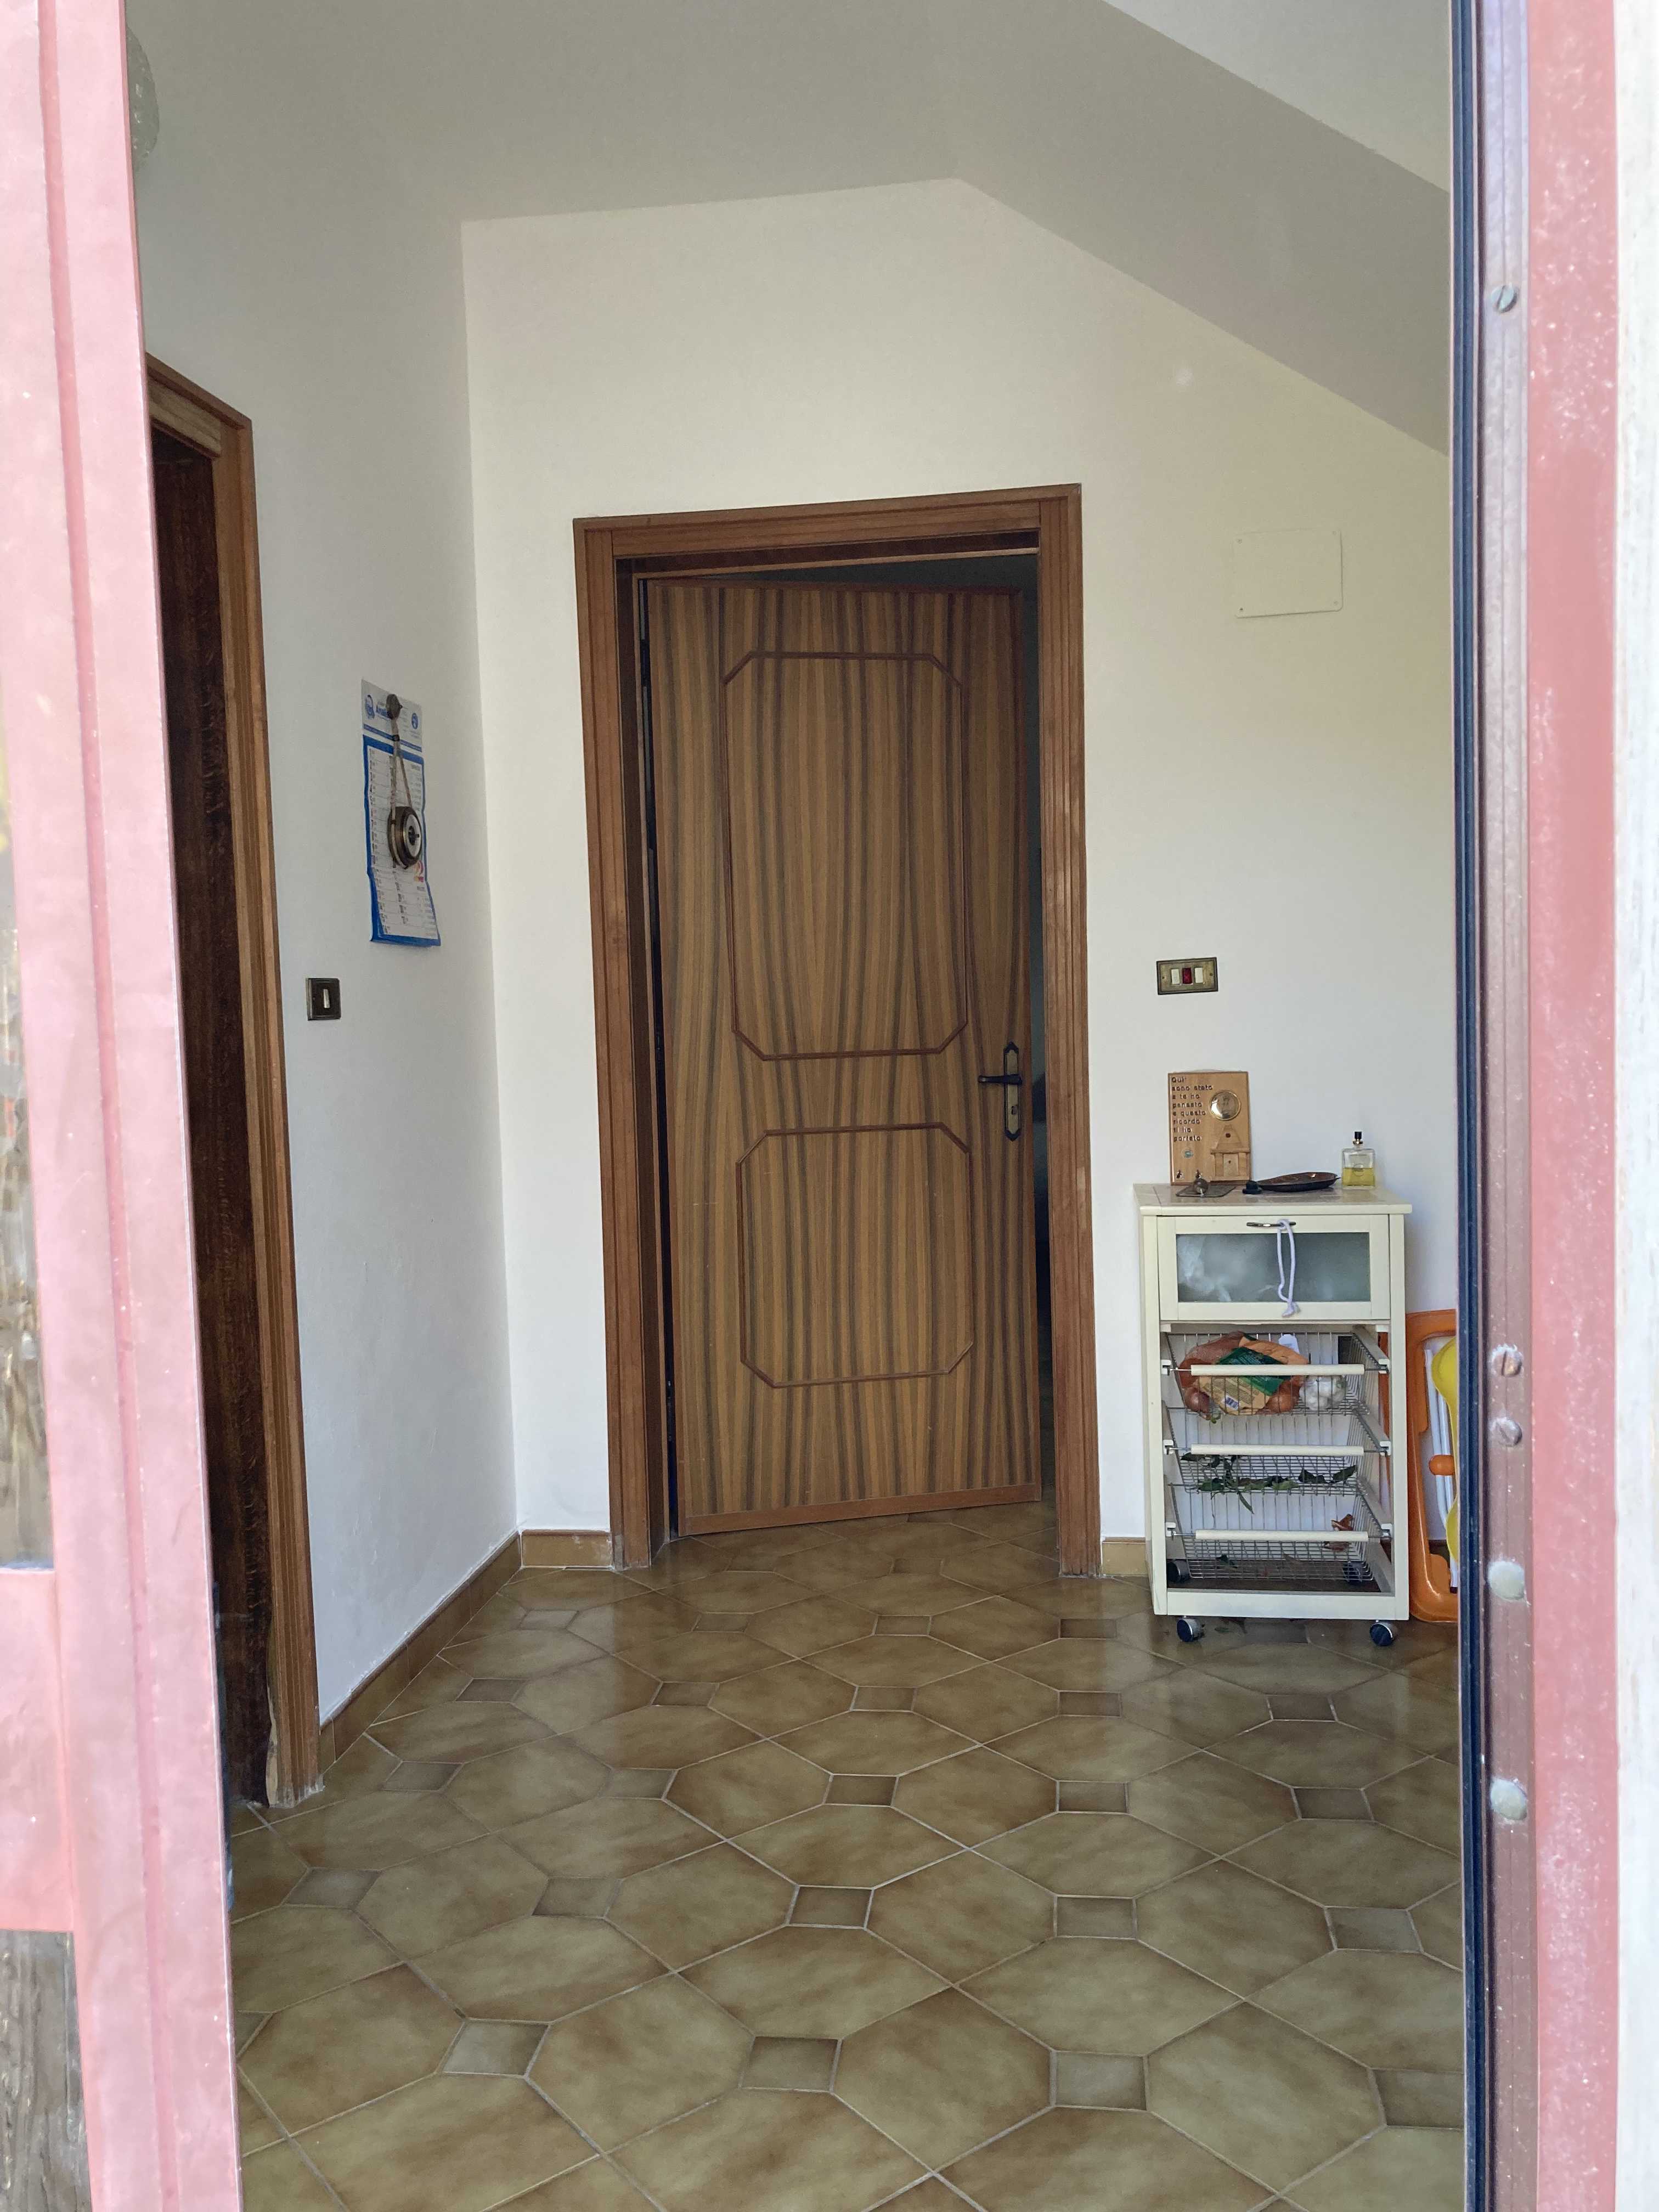 Vendite Salento: Vendita appartamento (Castrignano del Capo) - ingresso